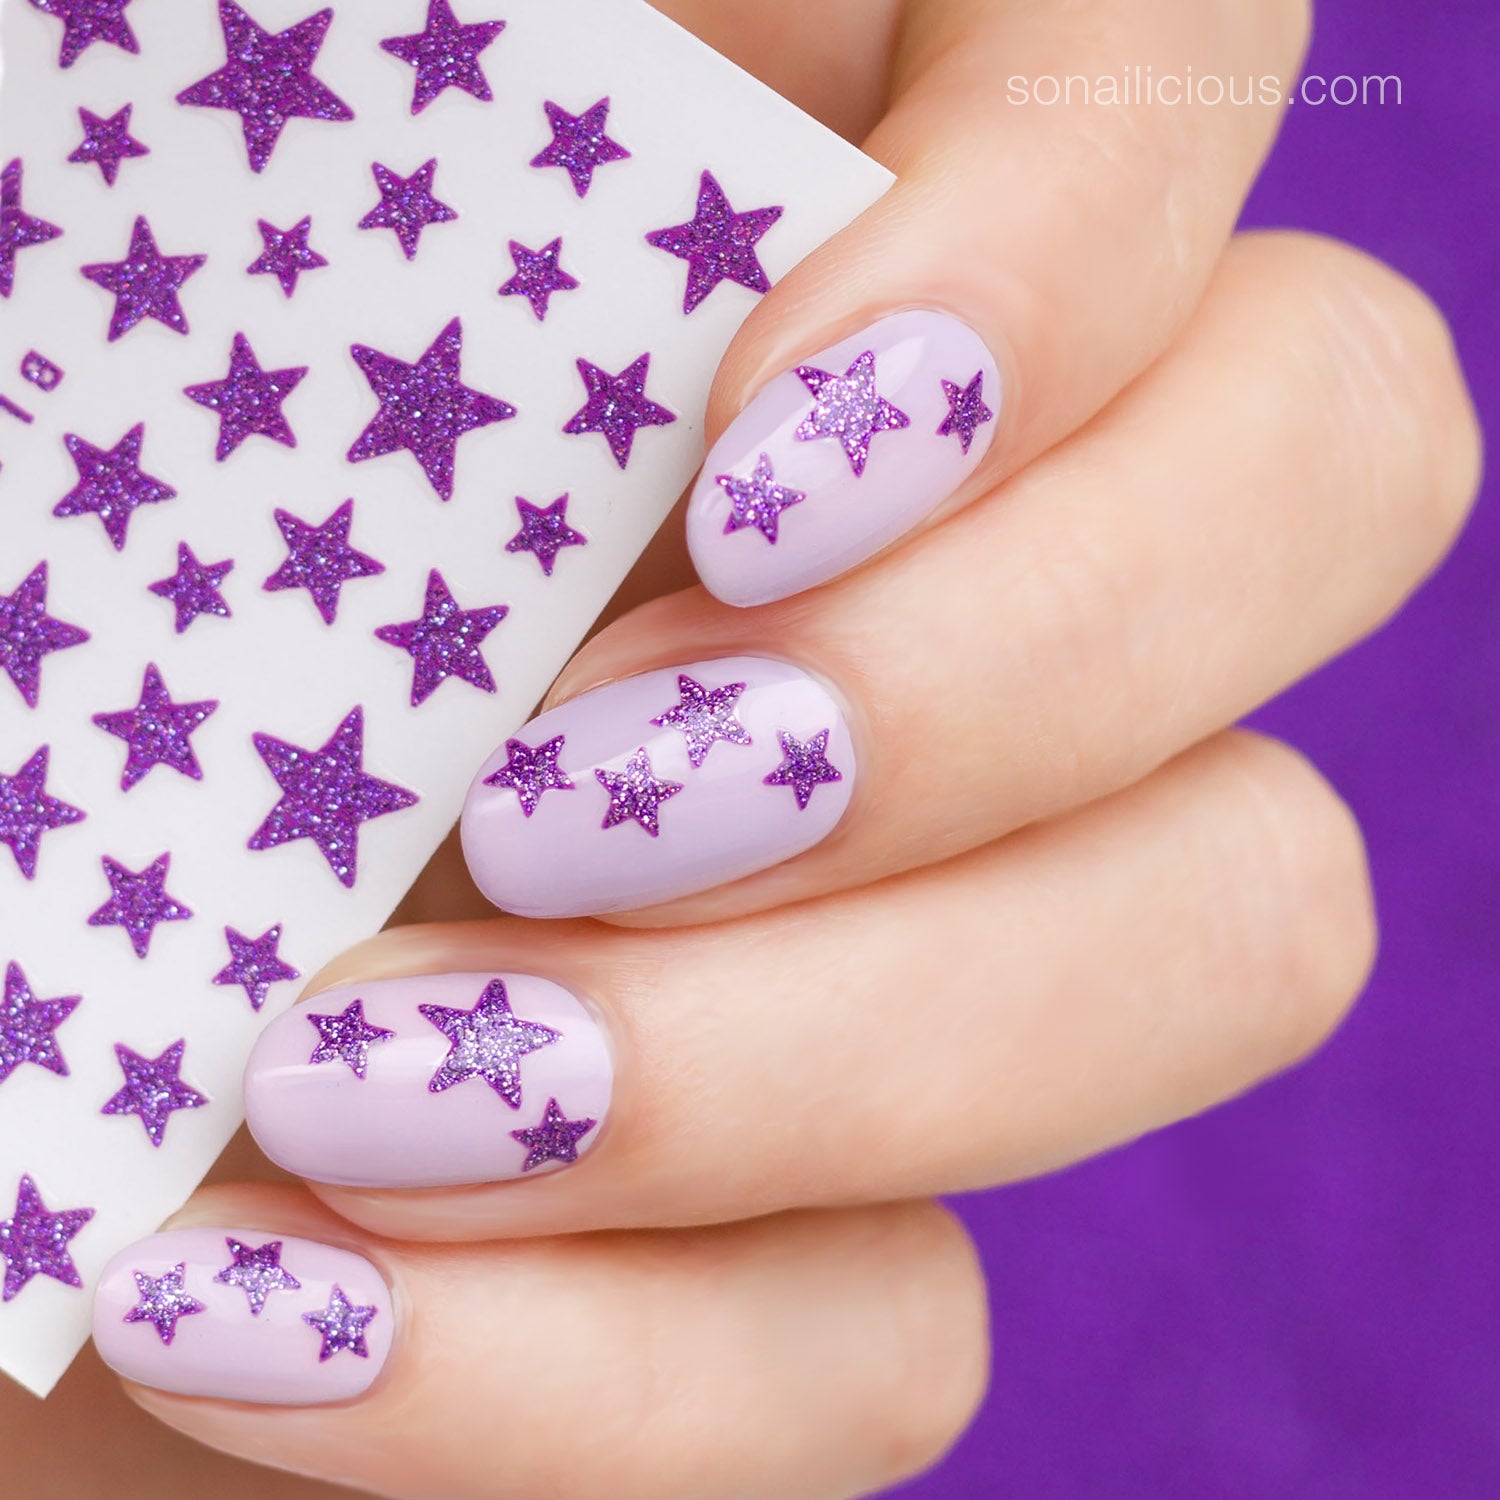 Festive Flourishes in Nail Art : Glitter Star Nails